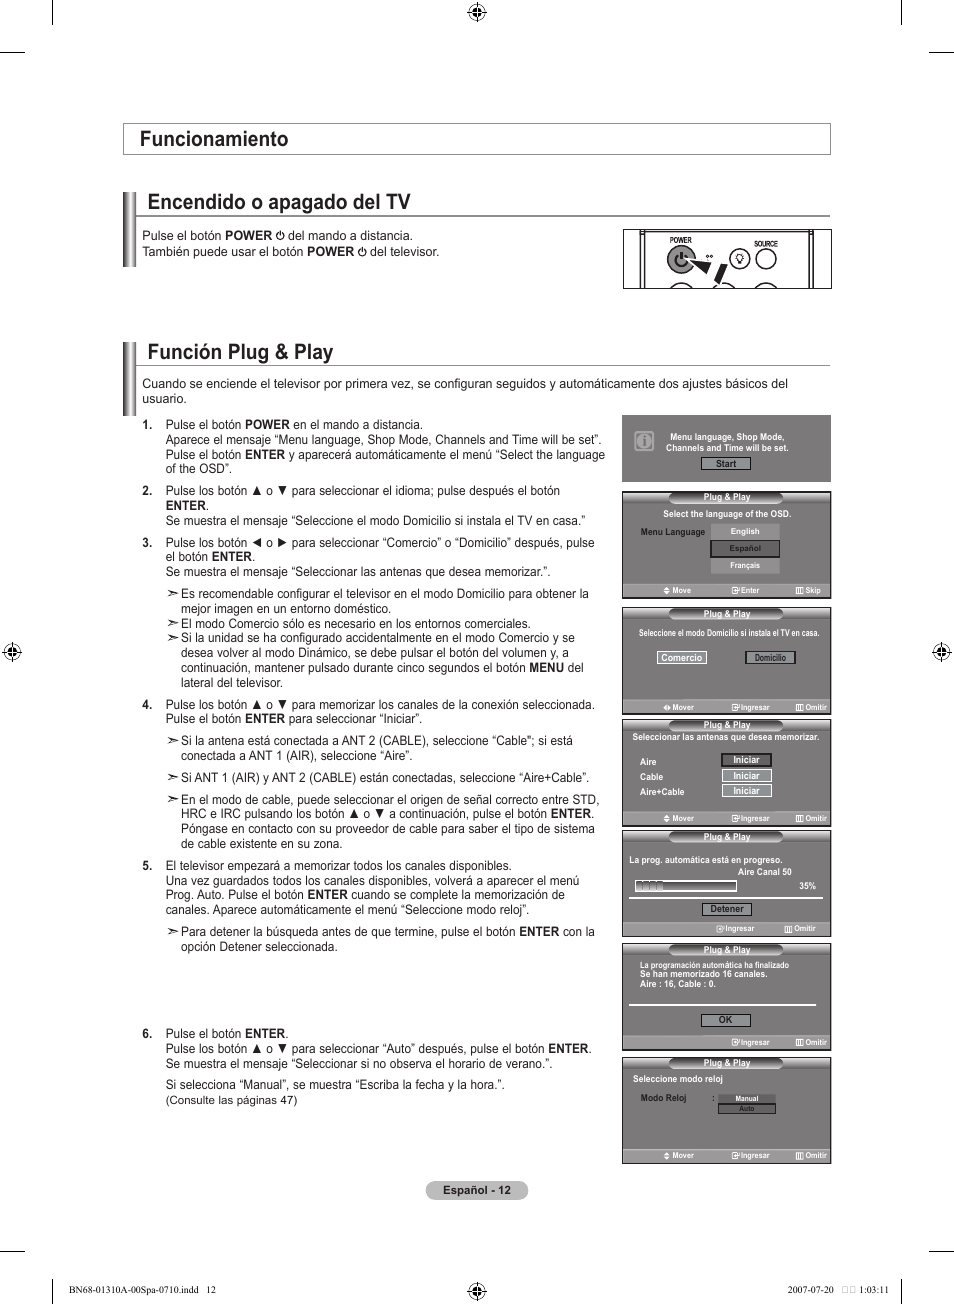 Función plug & play, Encendido o apagado del tv, Funcionamiento | Samsung  LNT4671FX-XAA User Manual | Page 198 / 277 | Original mode